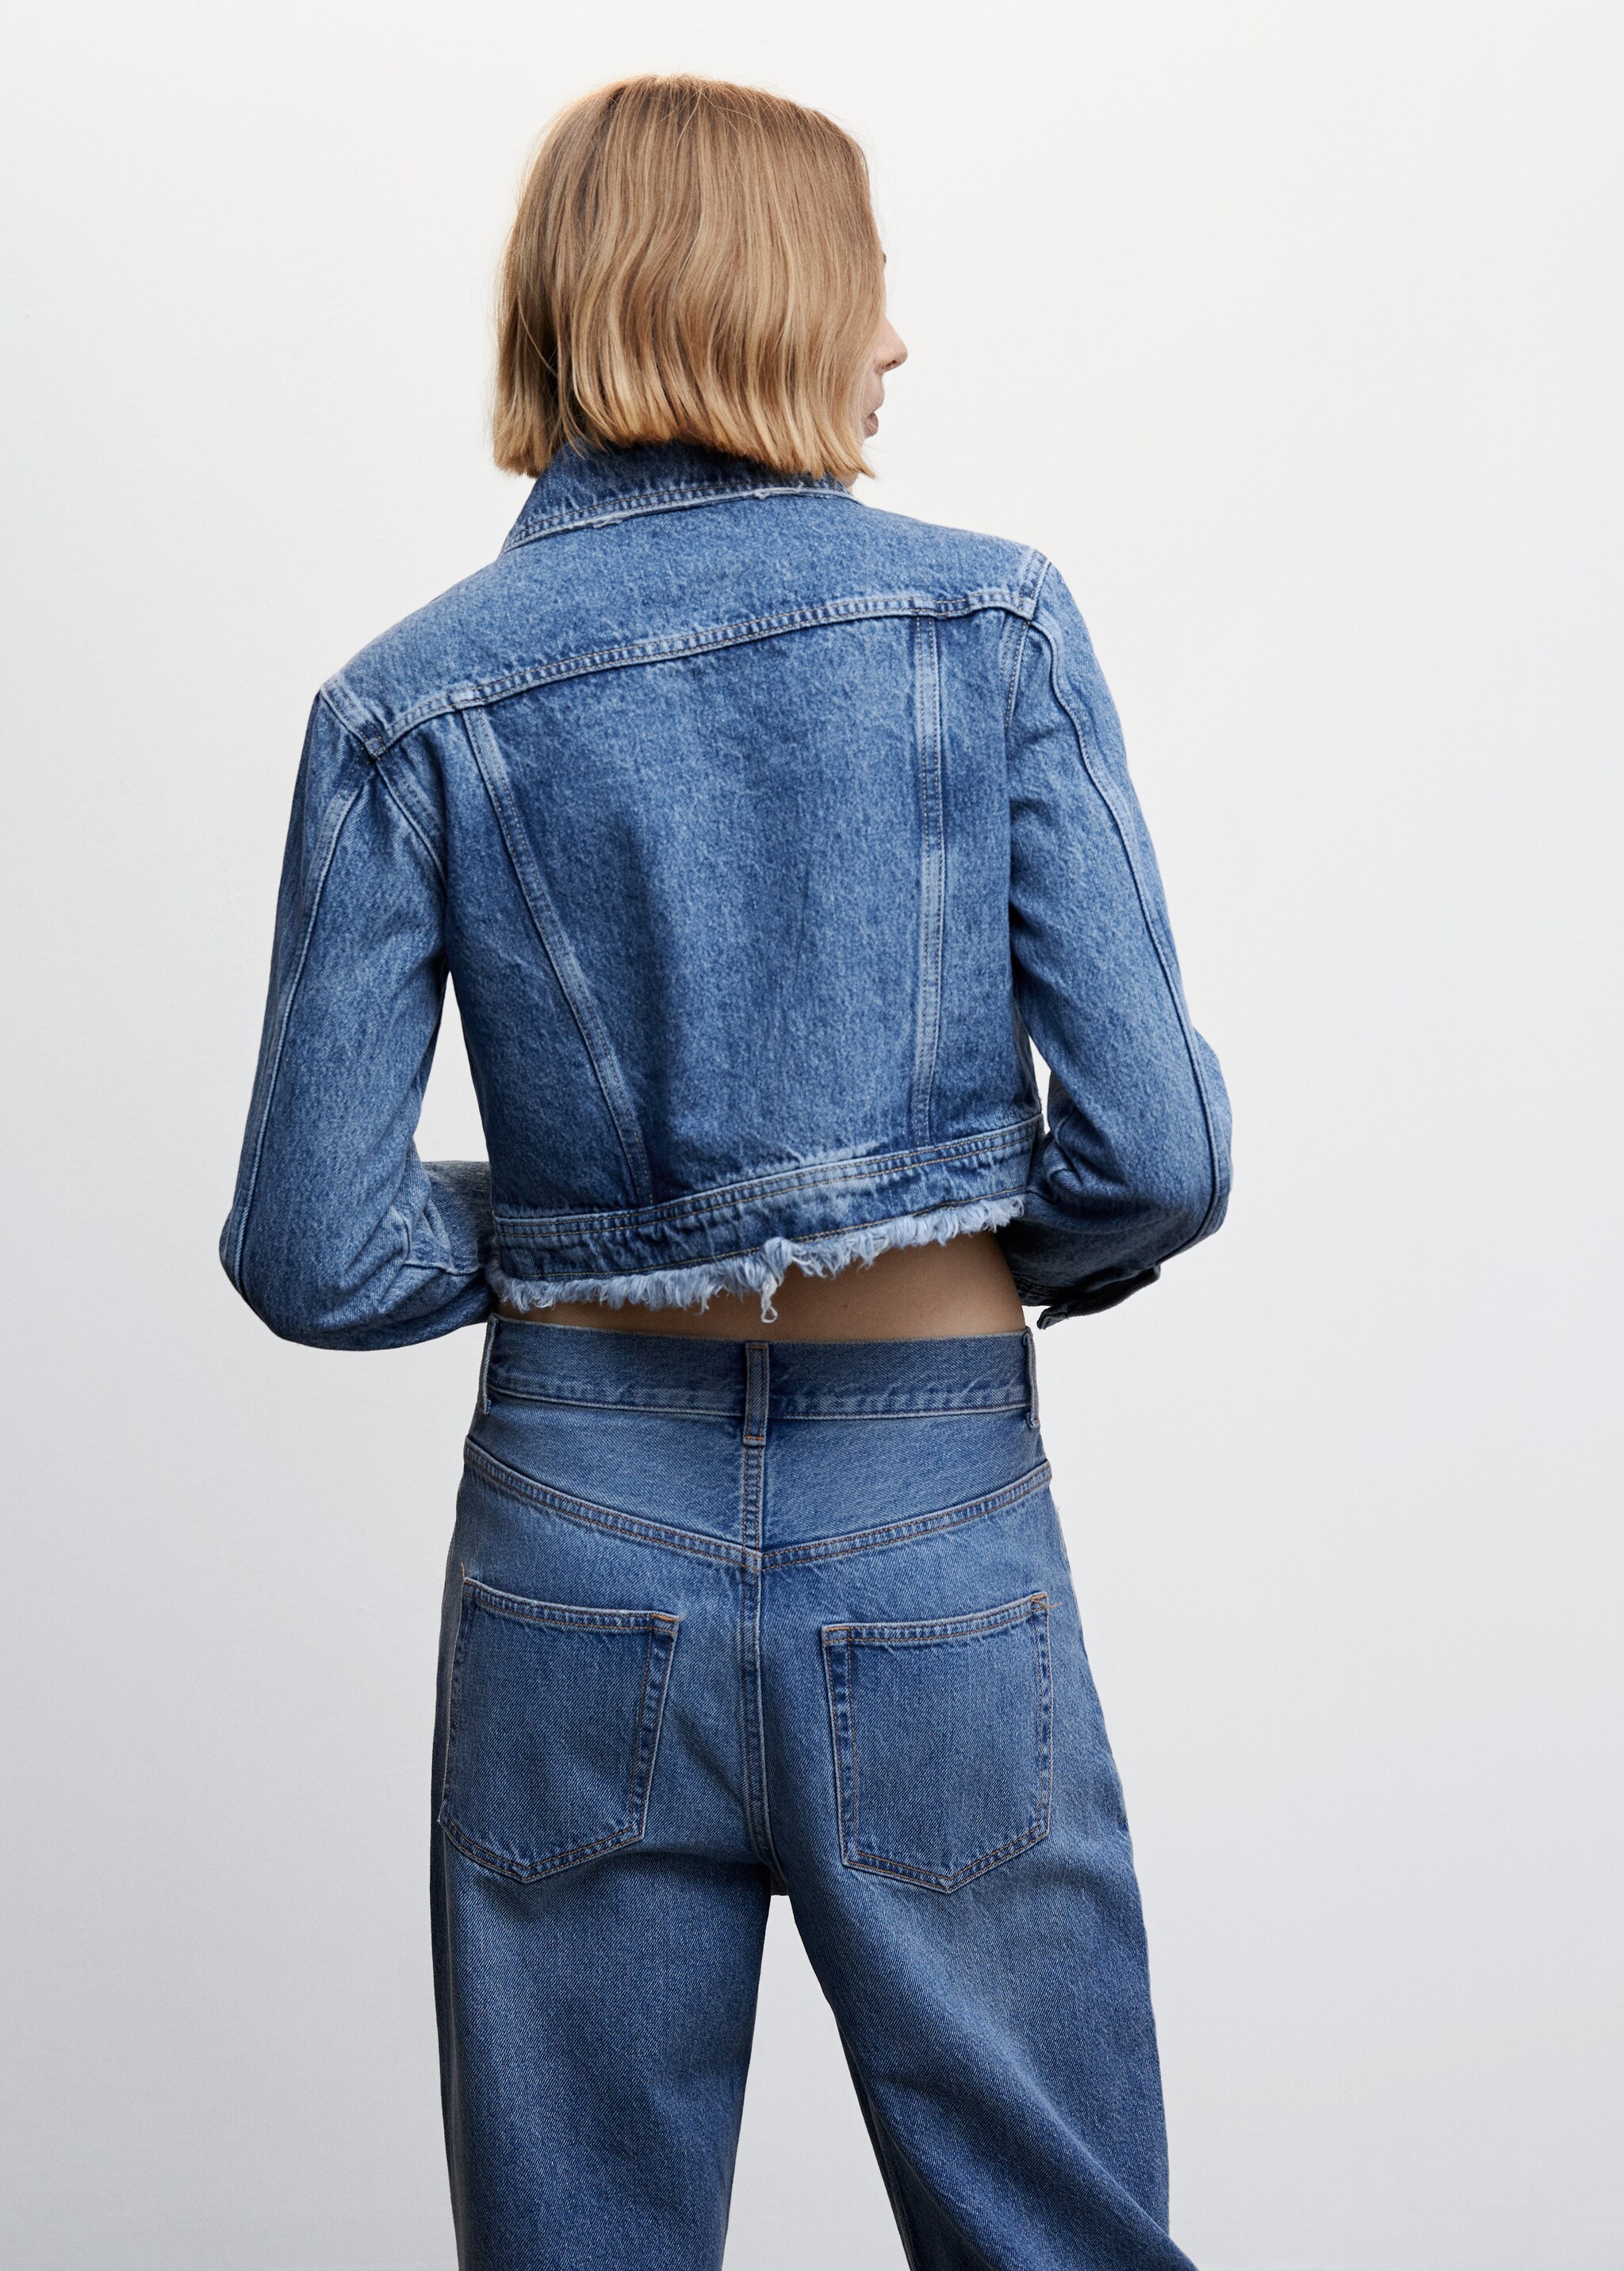 Jeansjacke mit ausgefransten Abschlüssen - Rückseite des Artikels